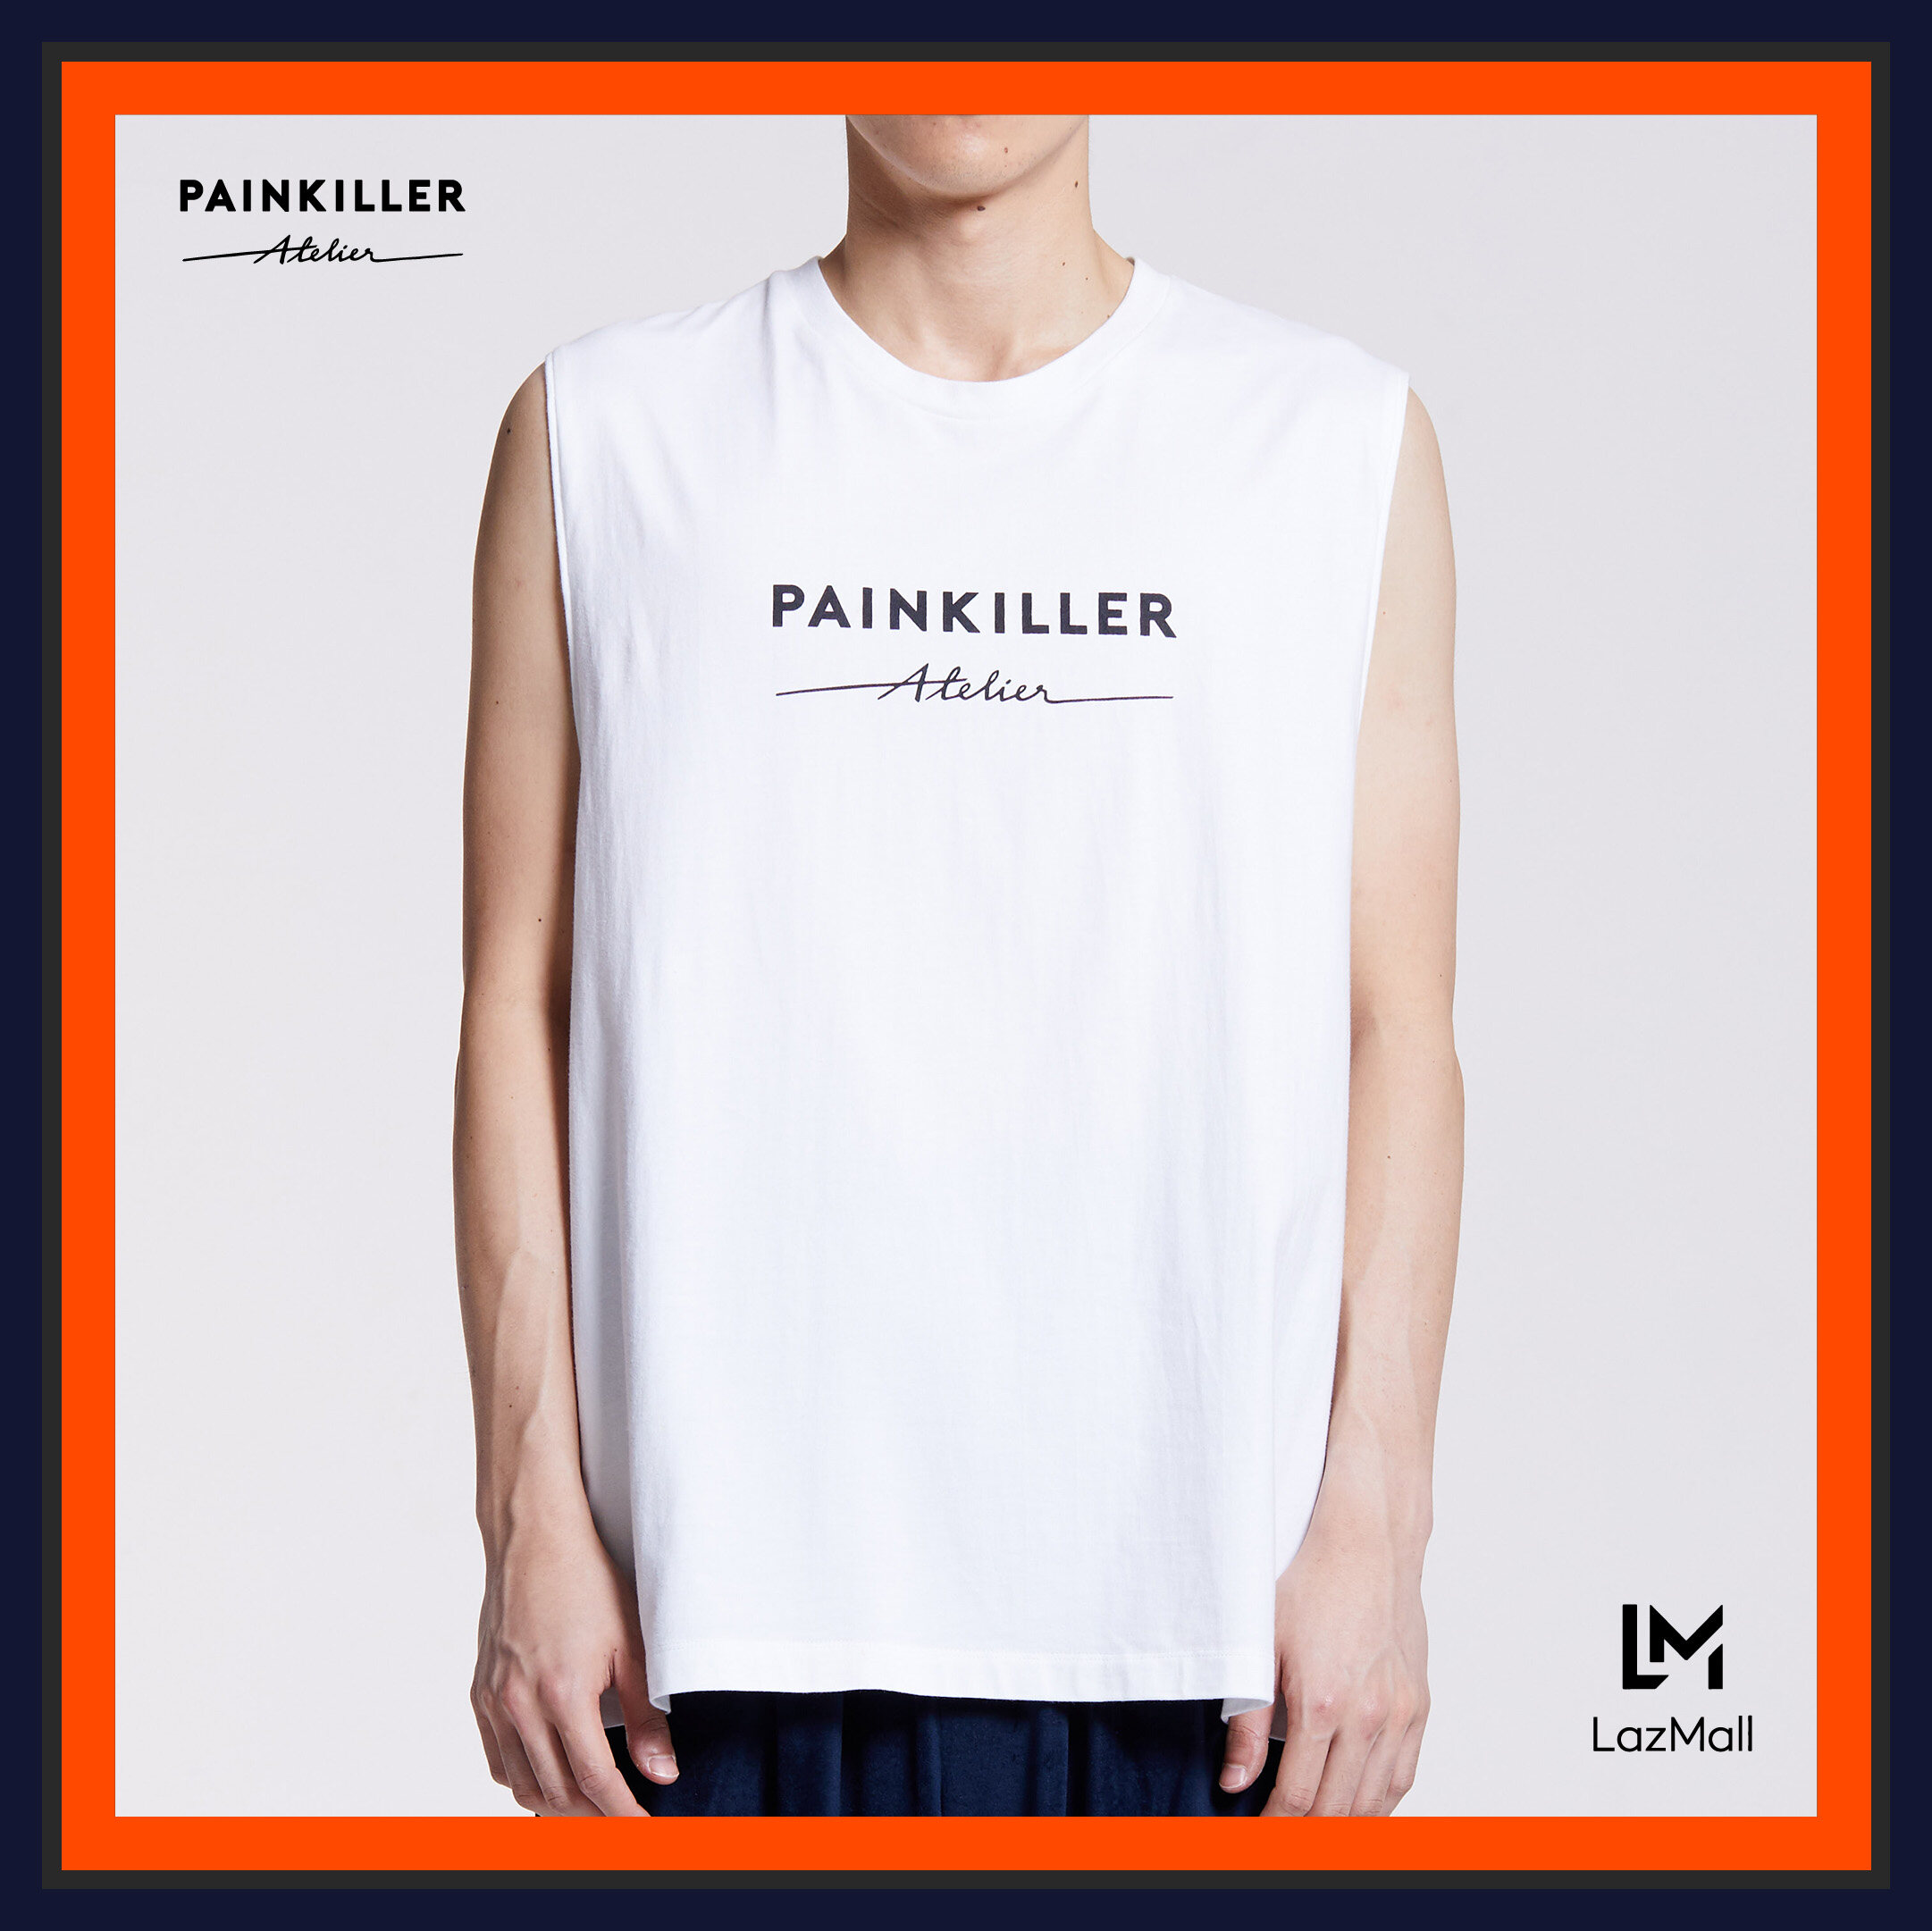 (PAINKILLER) PATH Sleeveless T-Shirt / เสื้อยืดผู้ชาย เสื้อแขนกุดชาย โอเวอร์ไซส์ เสื้อผ้าผู้ชาย เพนคิลเลอร์ / Tank Top Menswear PAINKILLER / AW20